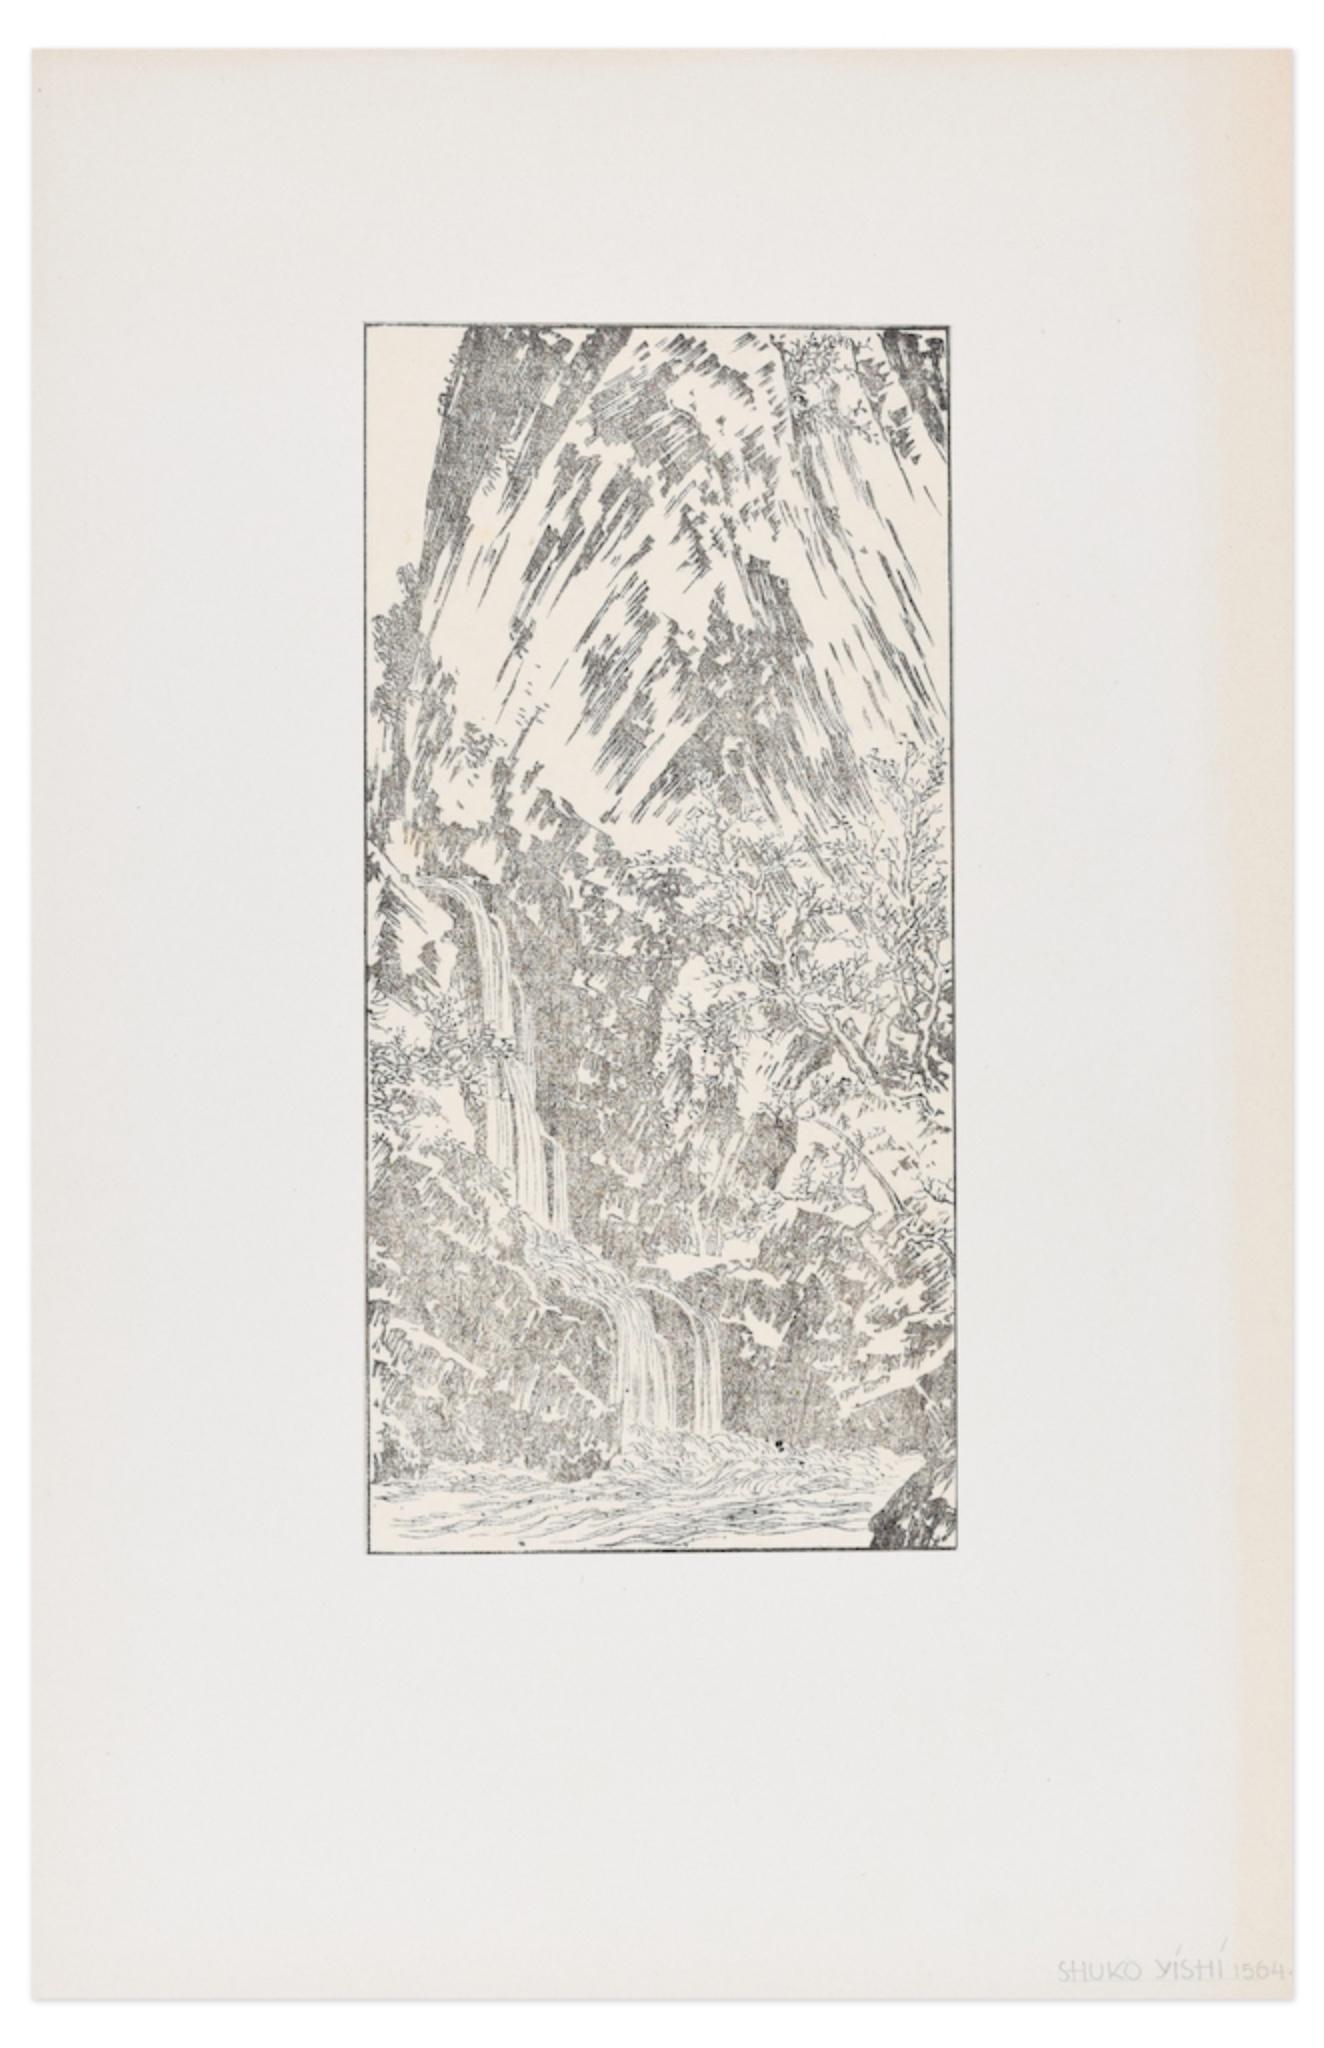 Le paysage est une réimpression d'une gravure sur bois réalisée d'après Shuko Yishi (1564- ?)

L'état de conservation est très bon.

Inclus un passepartout : 50 x 32,5 cm

L'œuvre représente un paysage poétique de chutes d'eau à travers une couleur